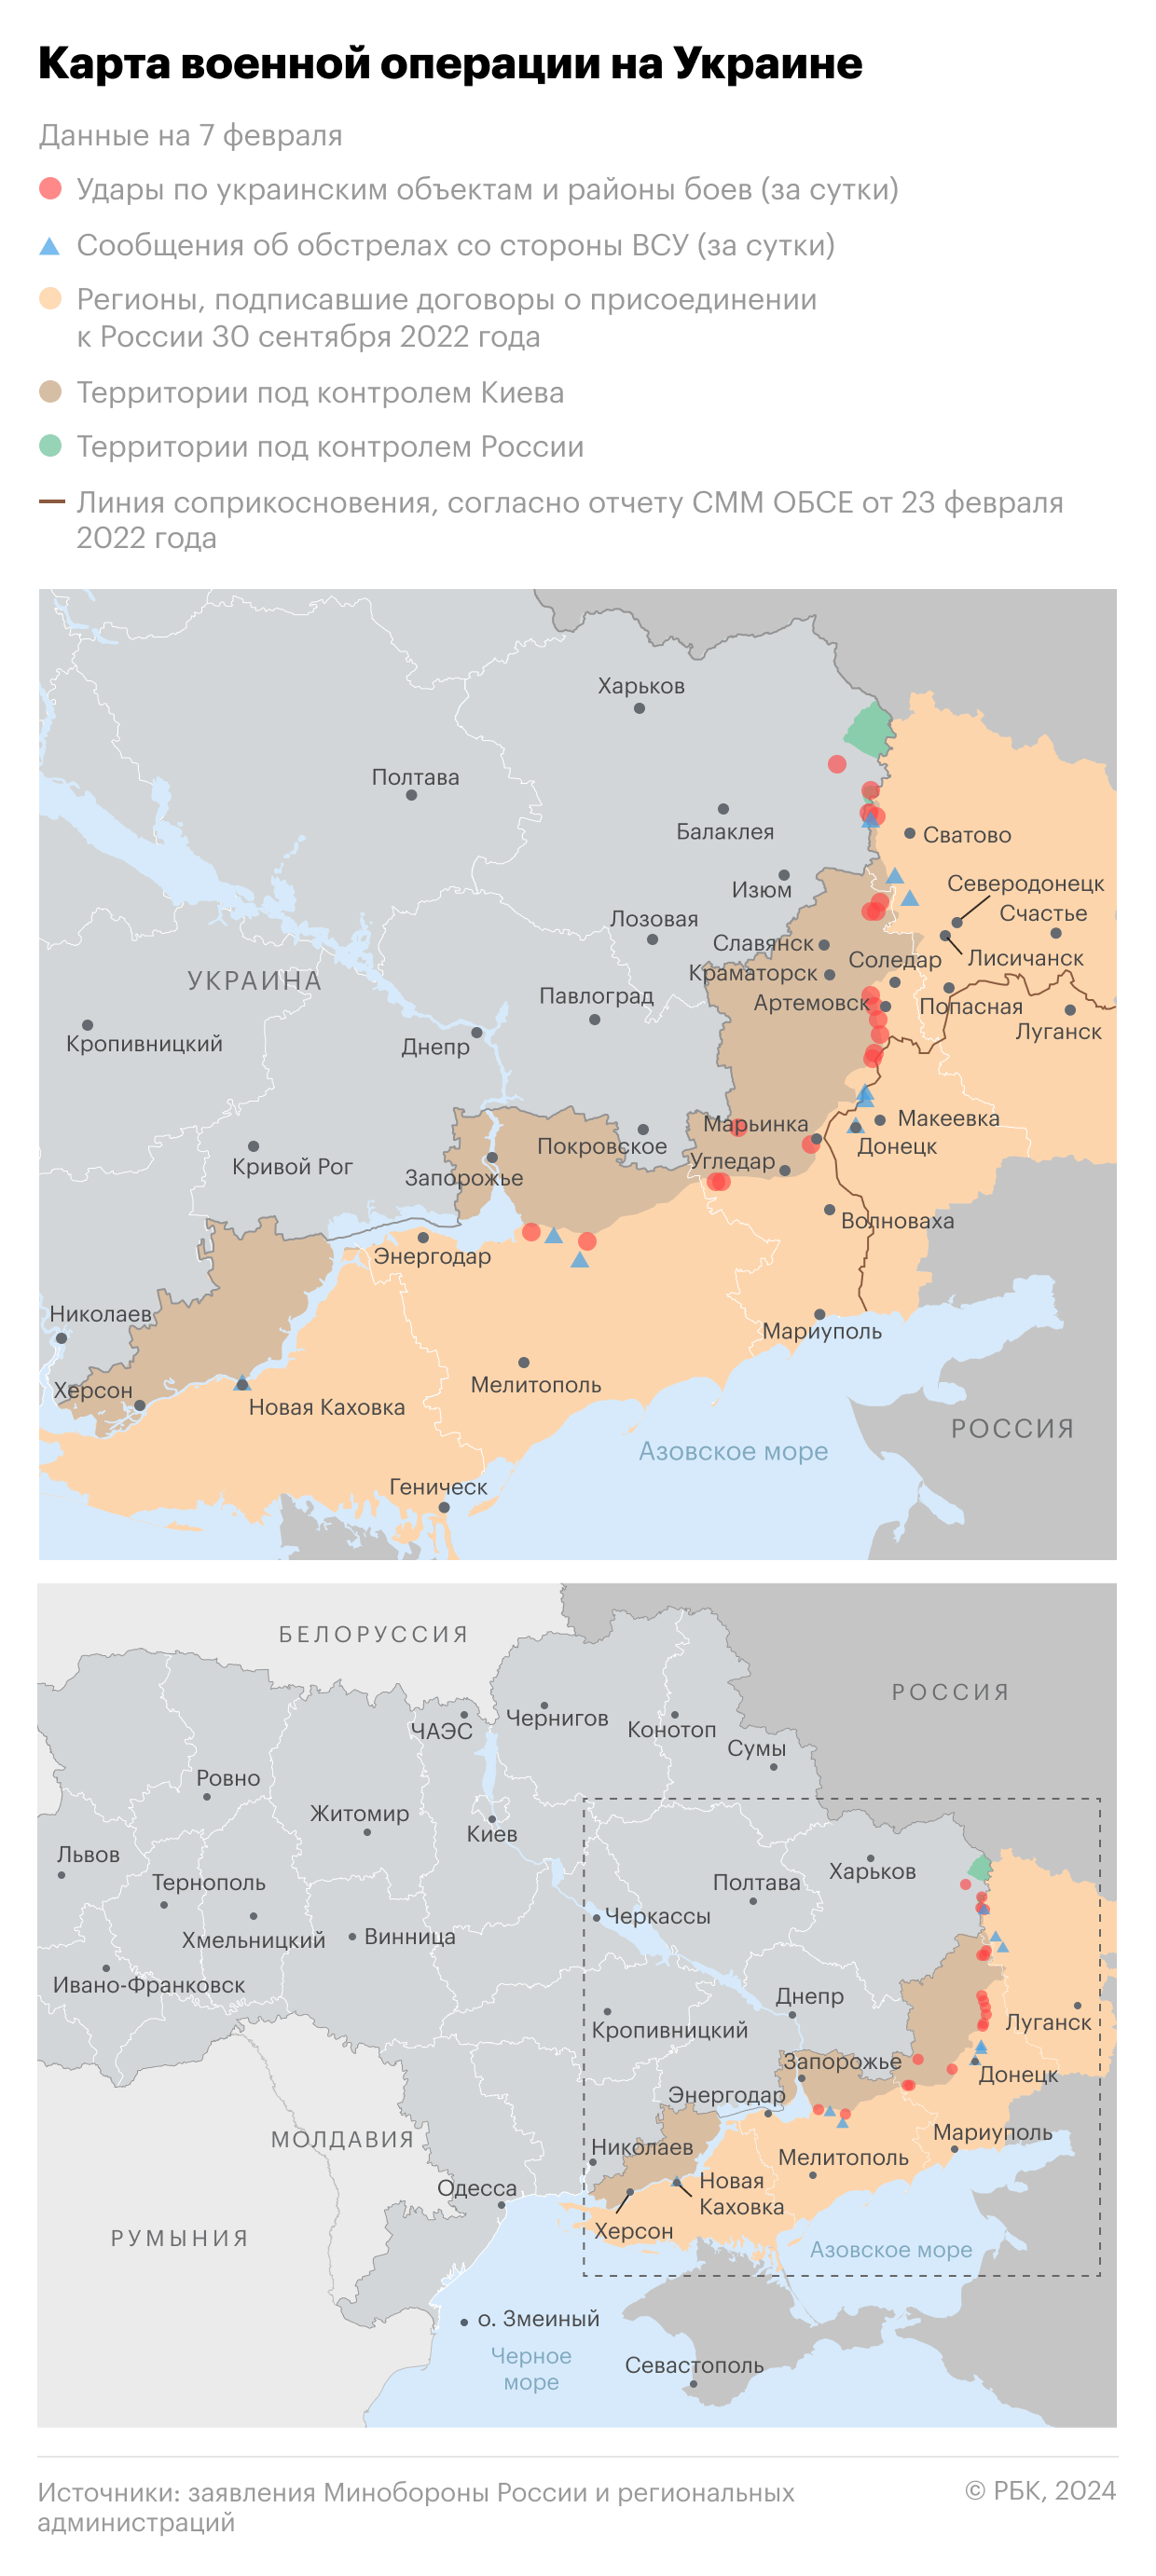 Военная операция на Украине. Карта на 7 февраля